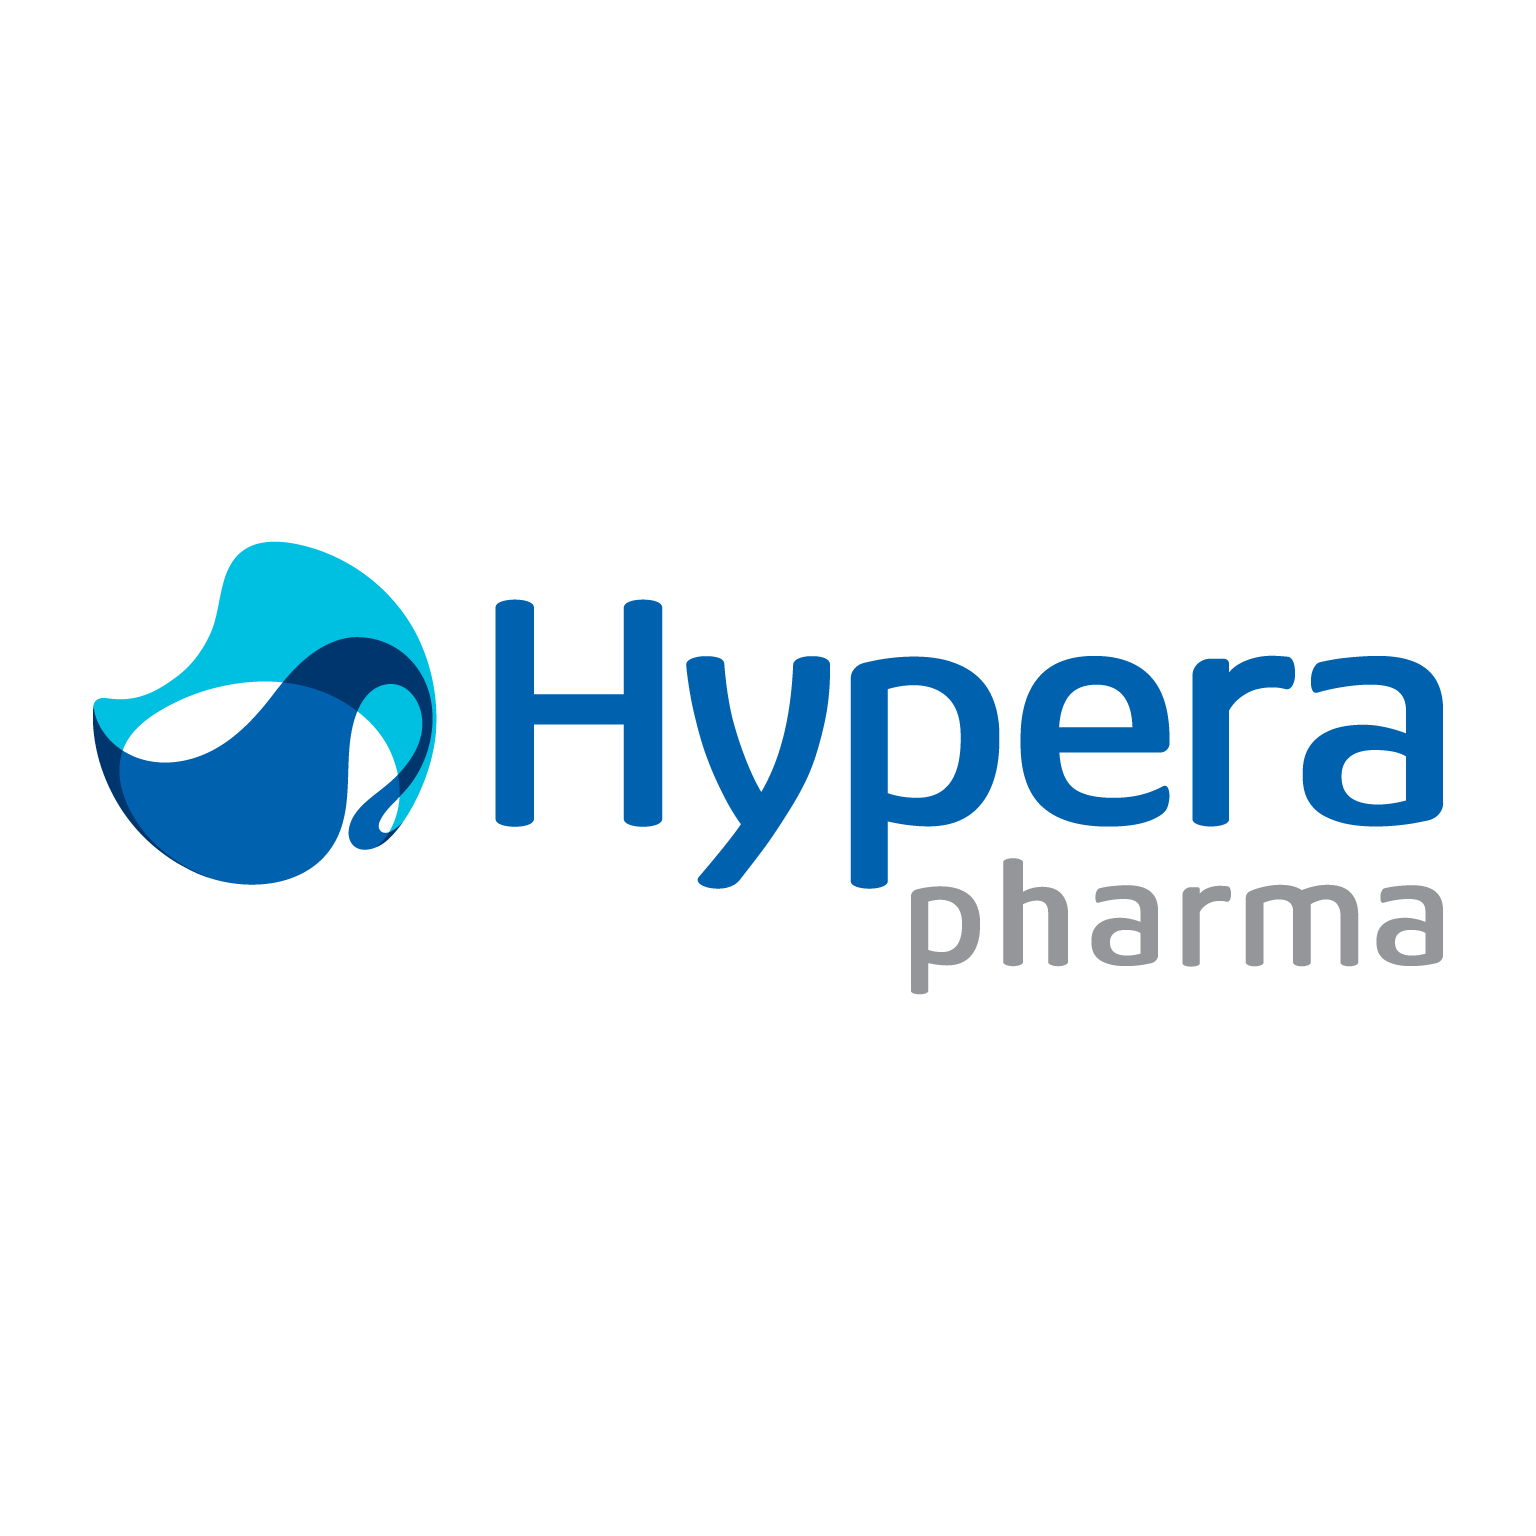 brasao do hypera pharma